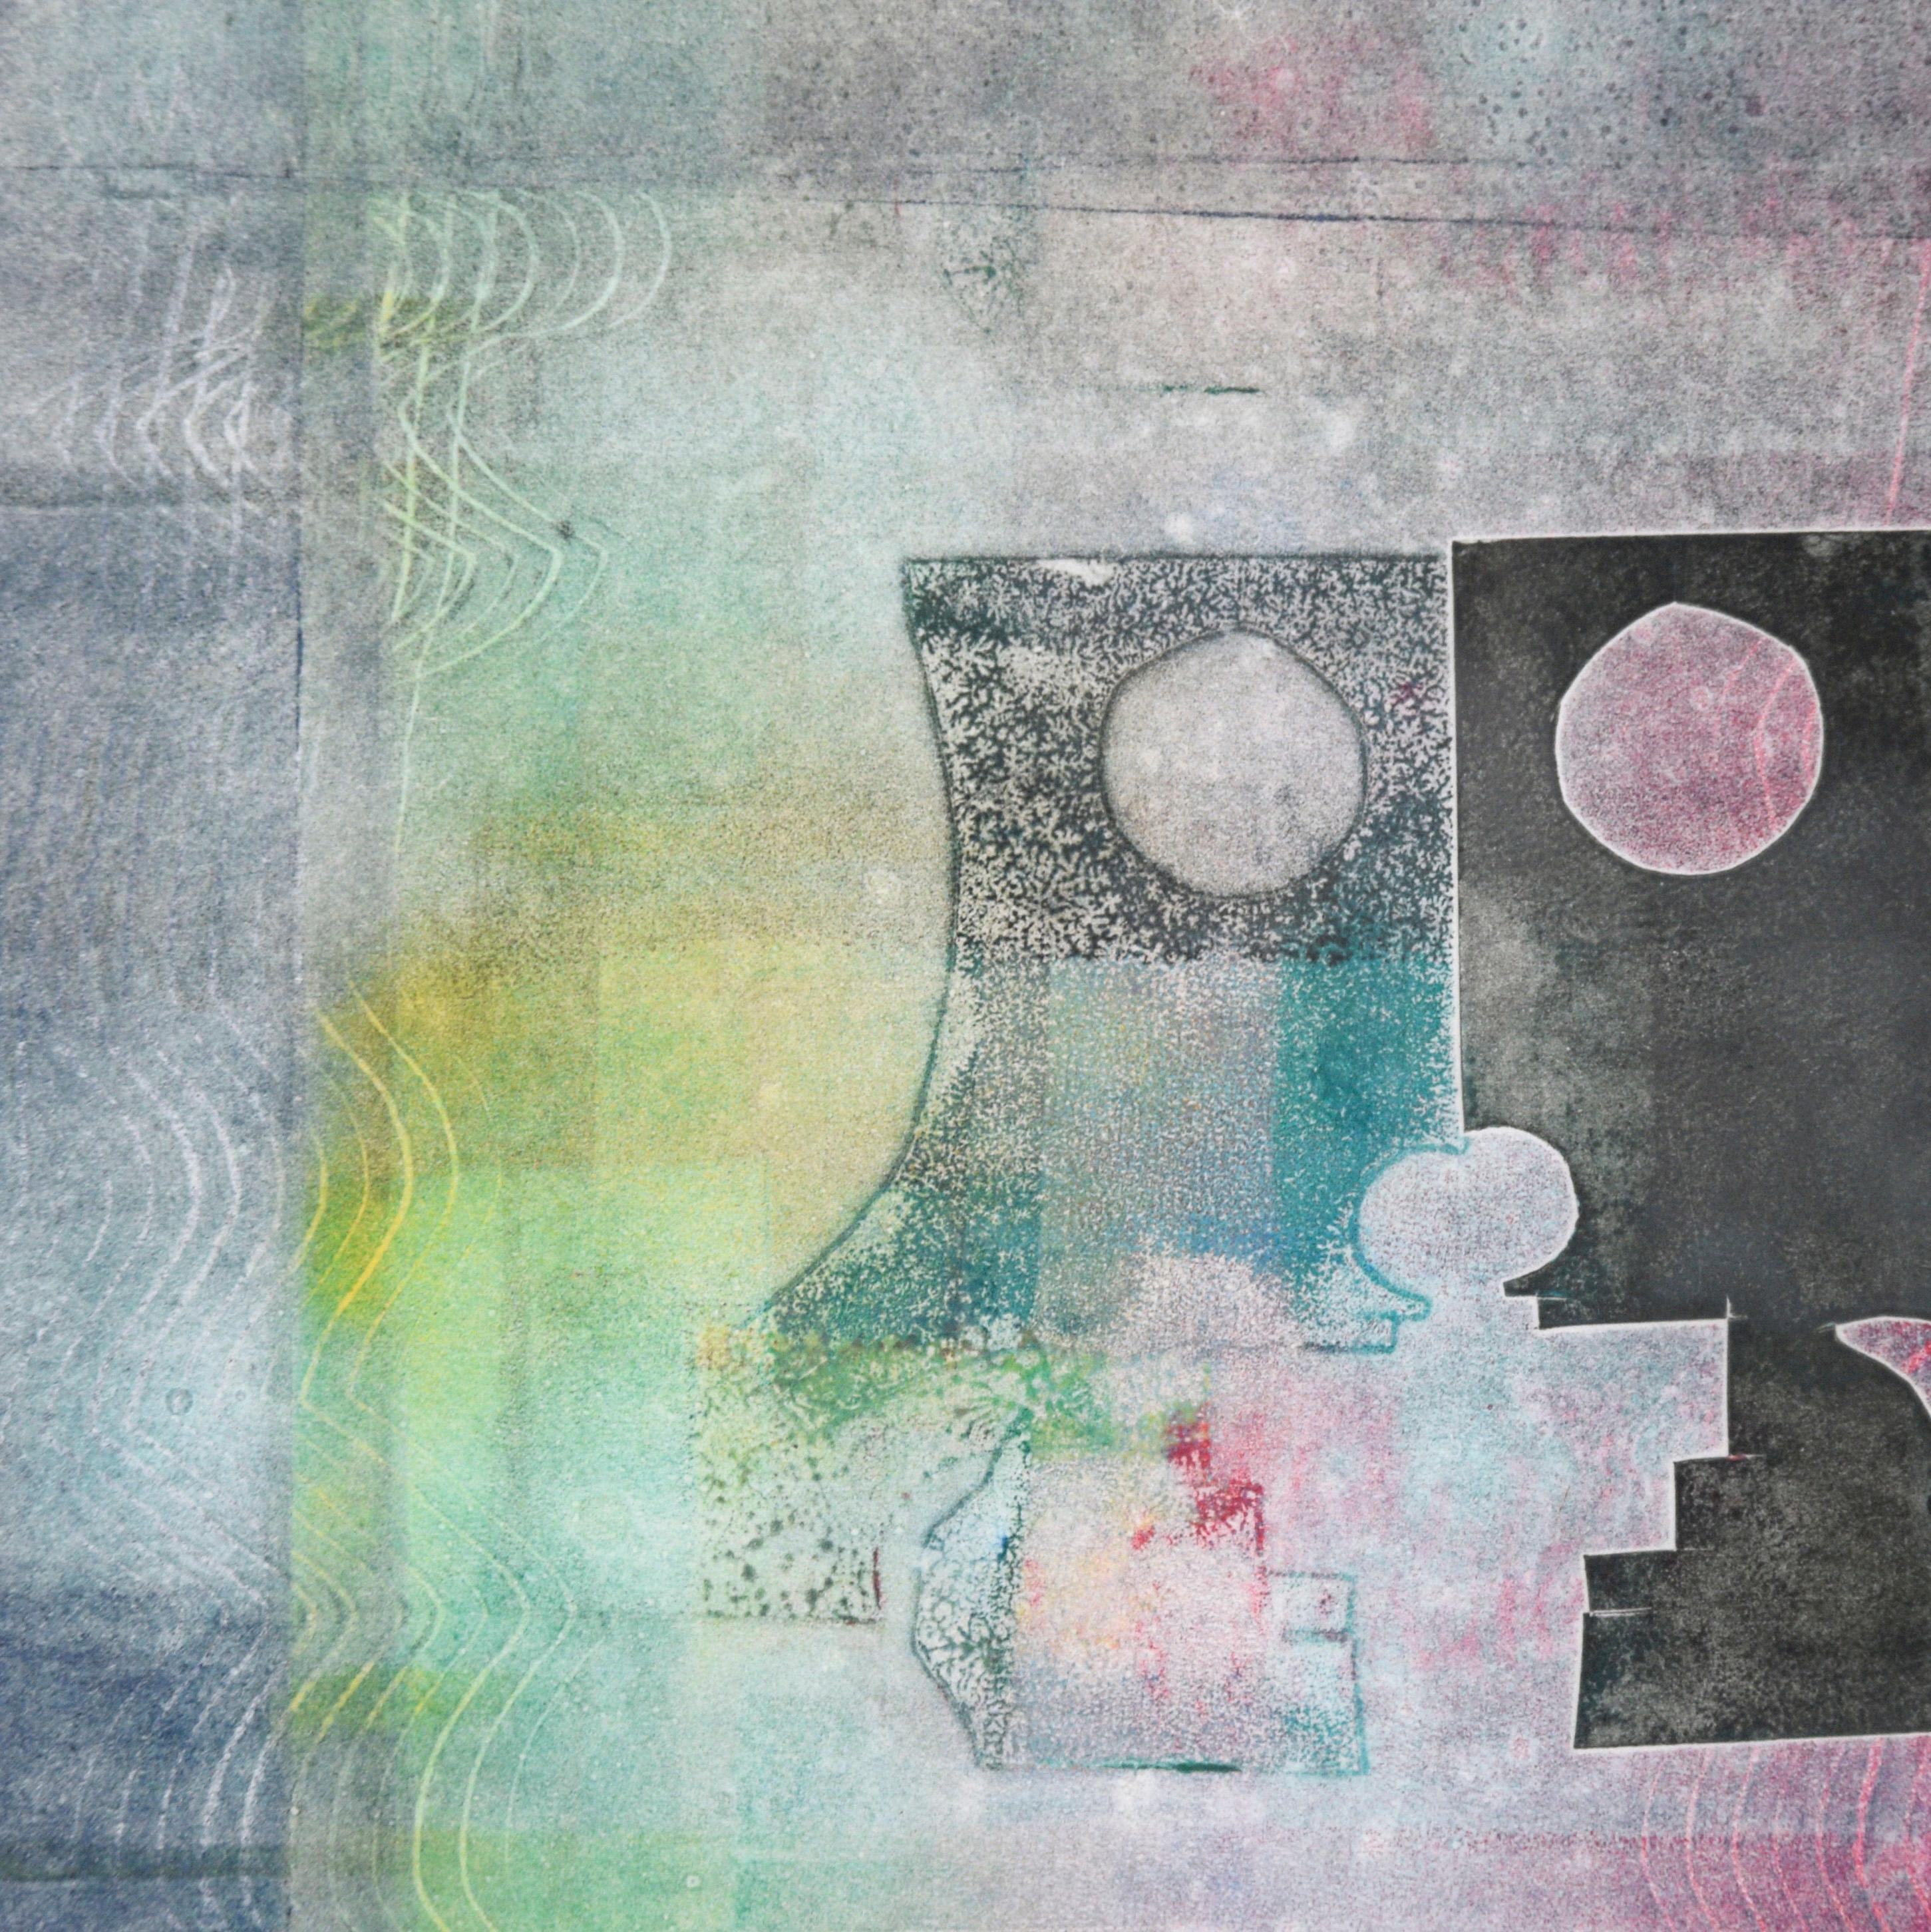 Abstrakte Monotypie „de Kus“ (Der Kus) in Tinte auf Papier

Helle und kühne abstrakte Monotypie der niederländisch-amerikanischen Künstlerin Anouk Johanna (geb. 1946). Zwei abstrahierte, menschenähnliche, dunkelgraue Formen spiegeln sich in einem